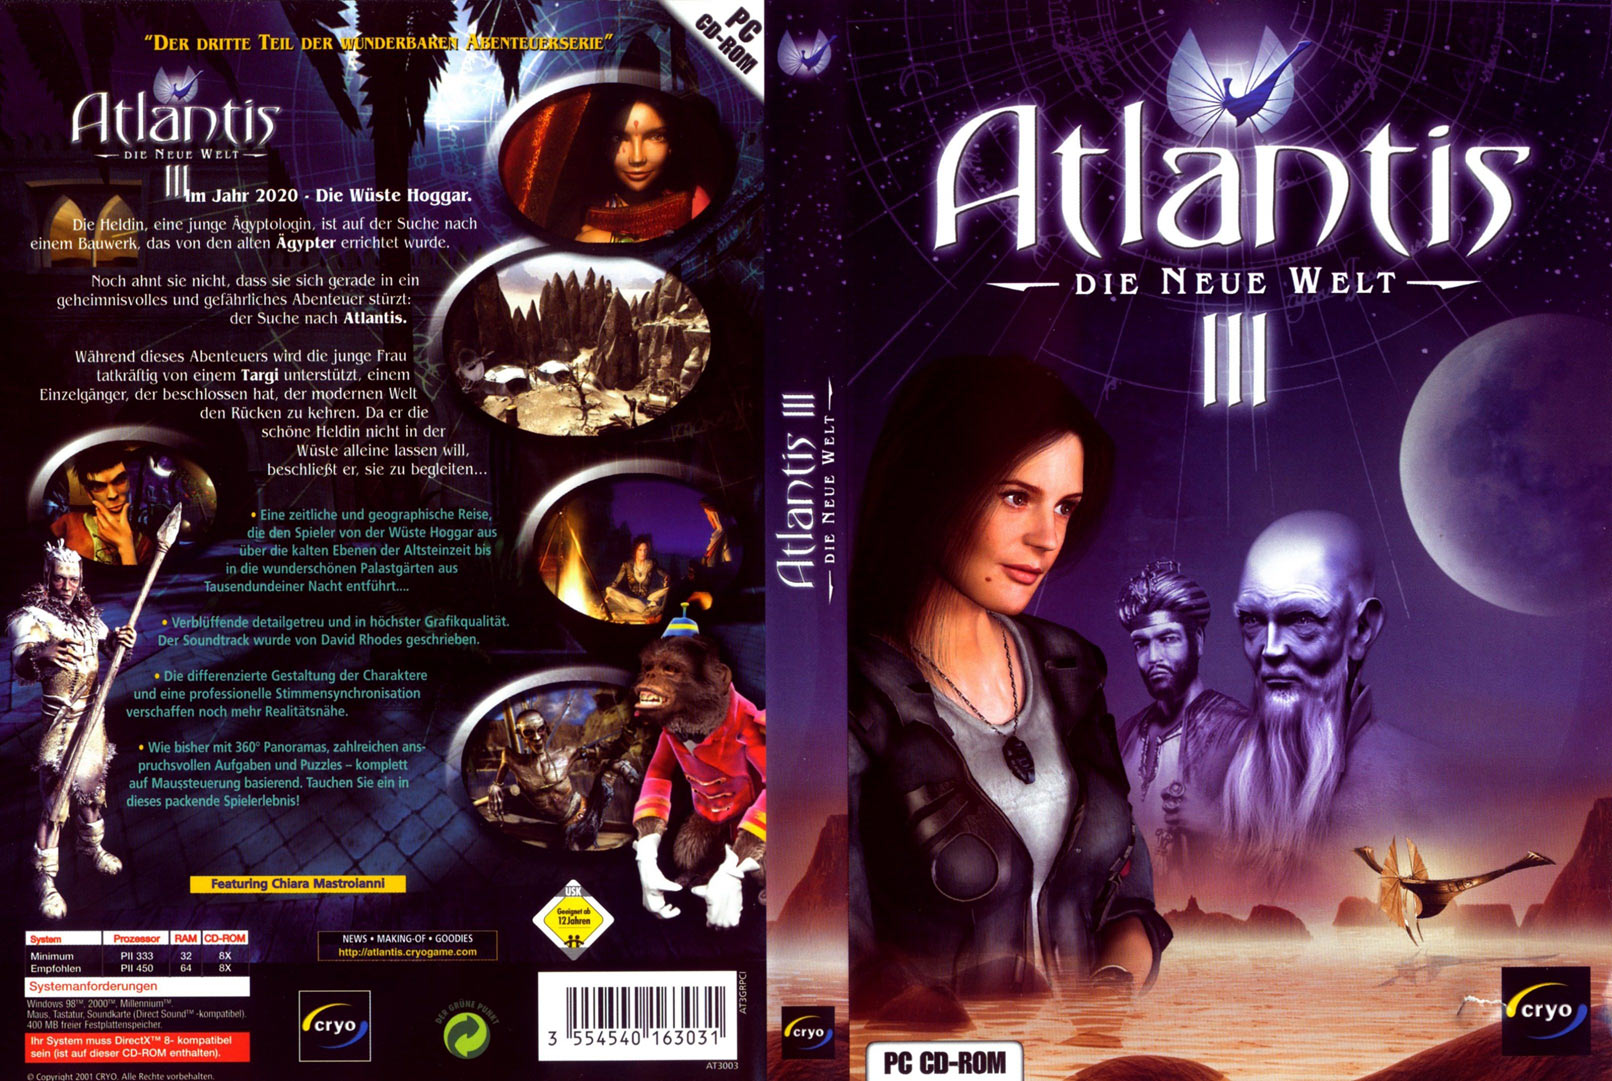 Atlantis 3. Атлантида 3 игра. Atlantis III: the New World игра. New Atlantis. Atlantis 3 ps2.